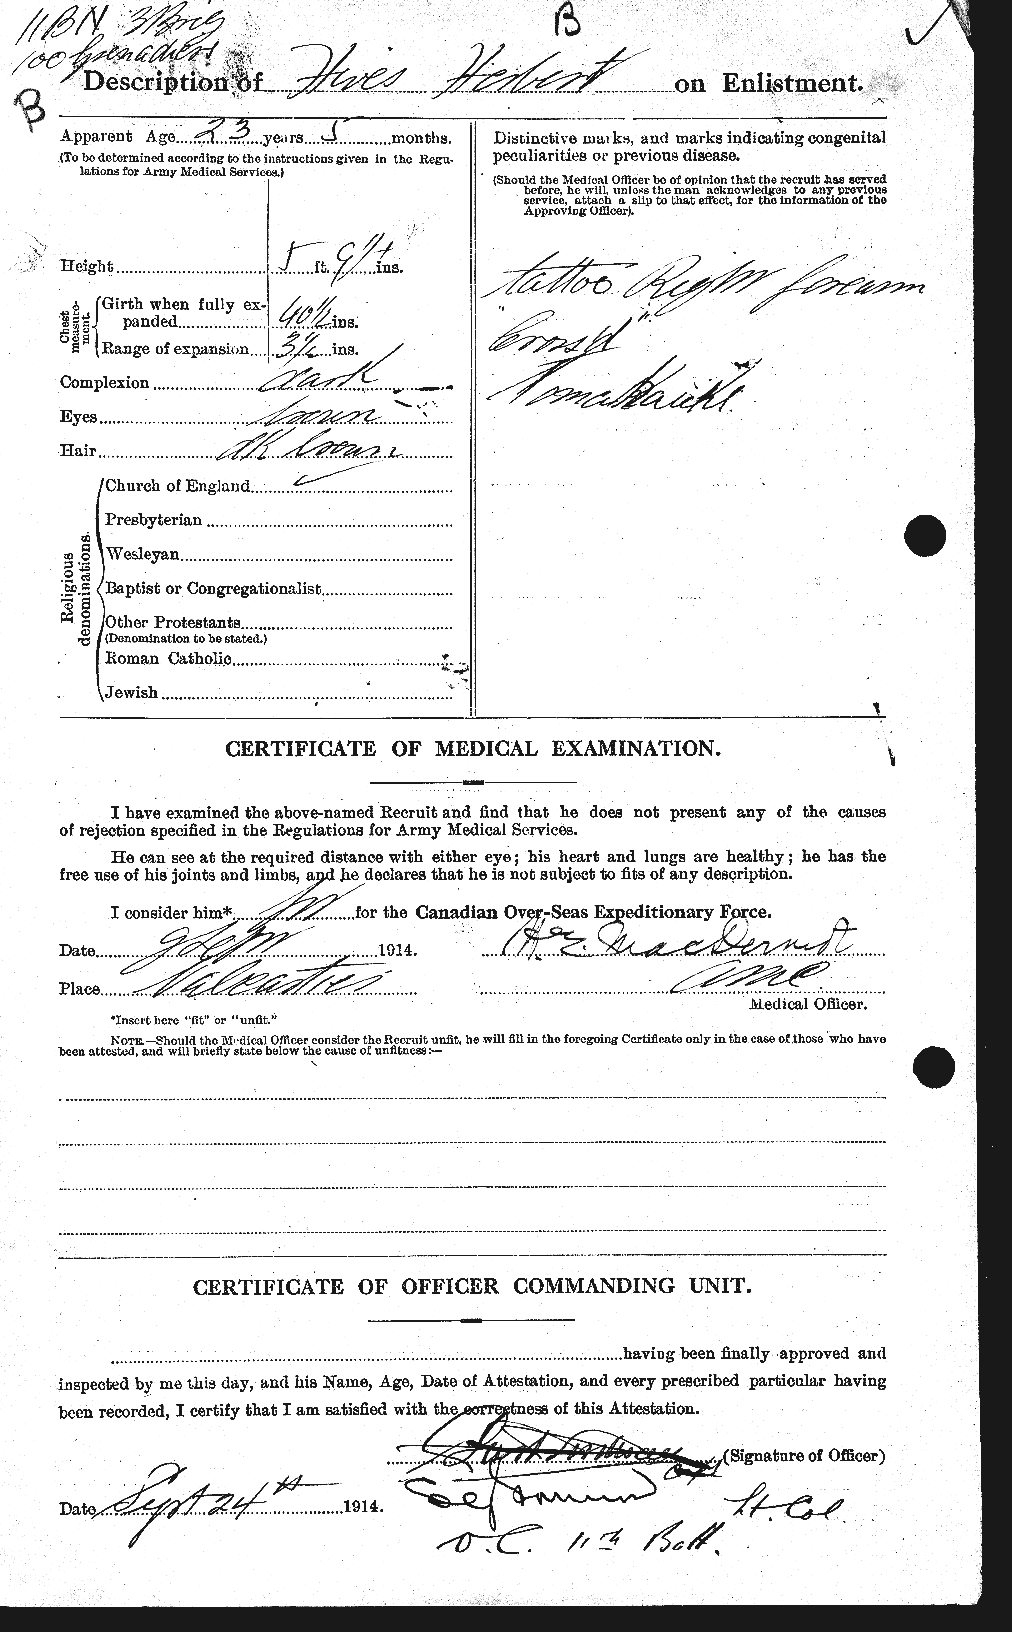 Dossiers du Personnel de la Première Guerre mondiale - CEC 394676b